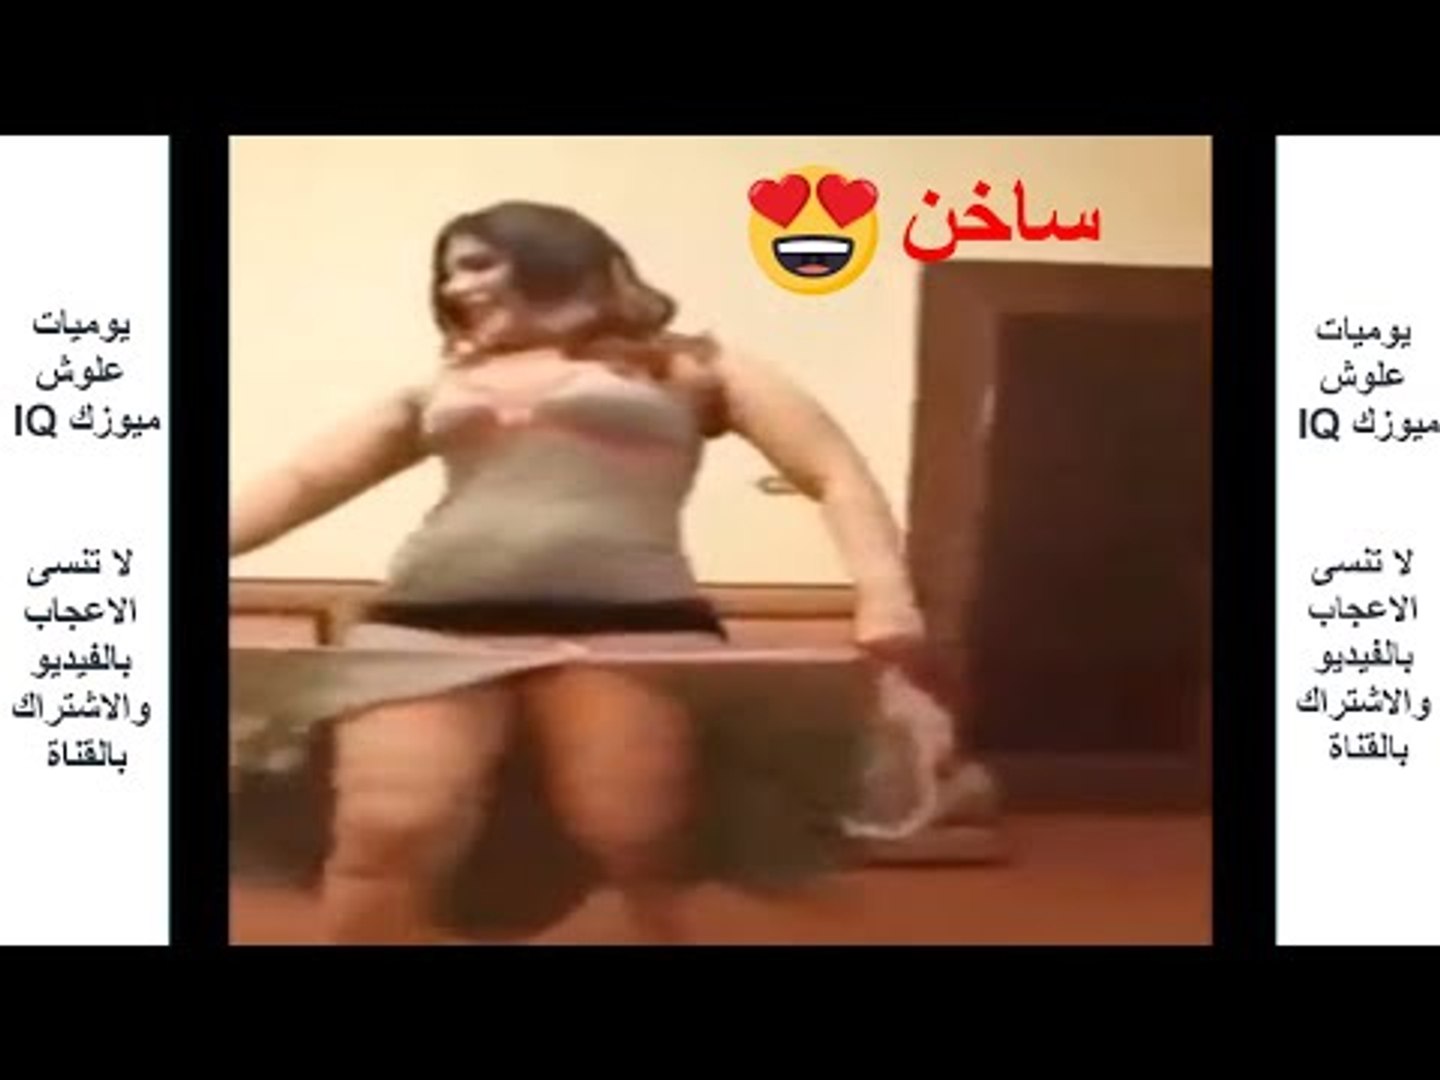 حفلة عراقية منزلية خاصة جدا - حفلات كاولية خاصة جدا 2018 - video Dailymotion